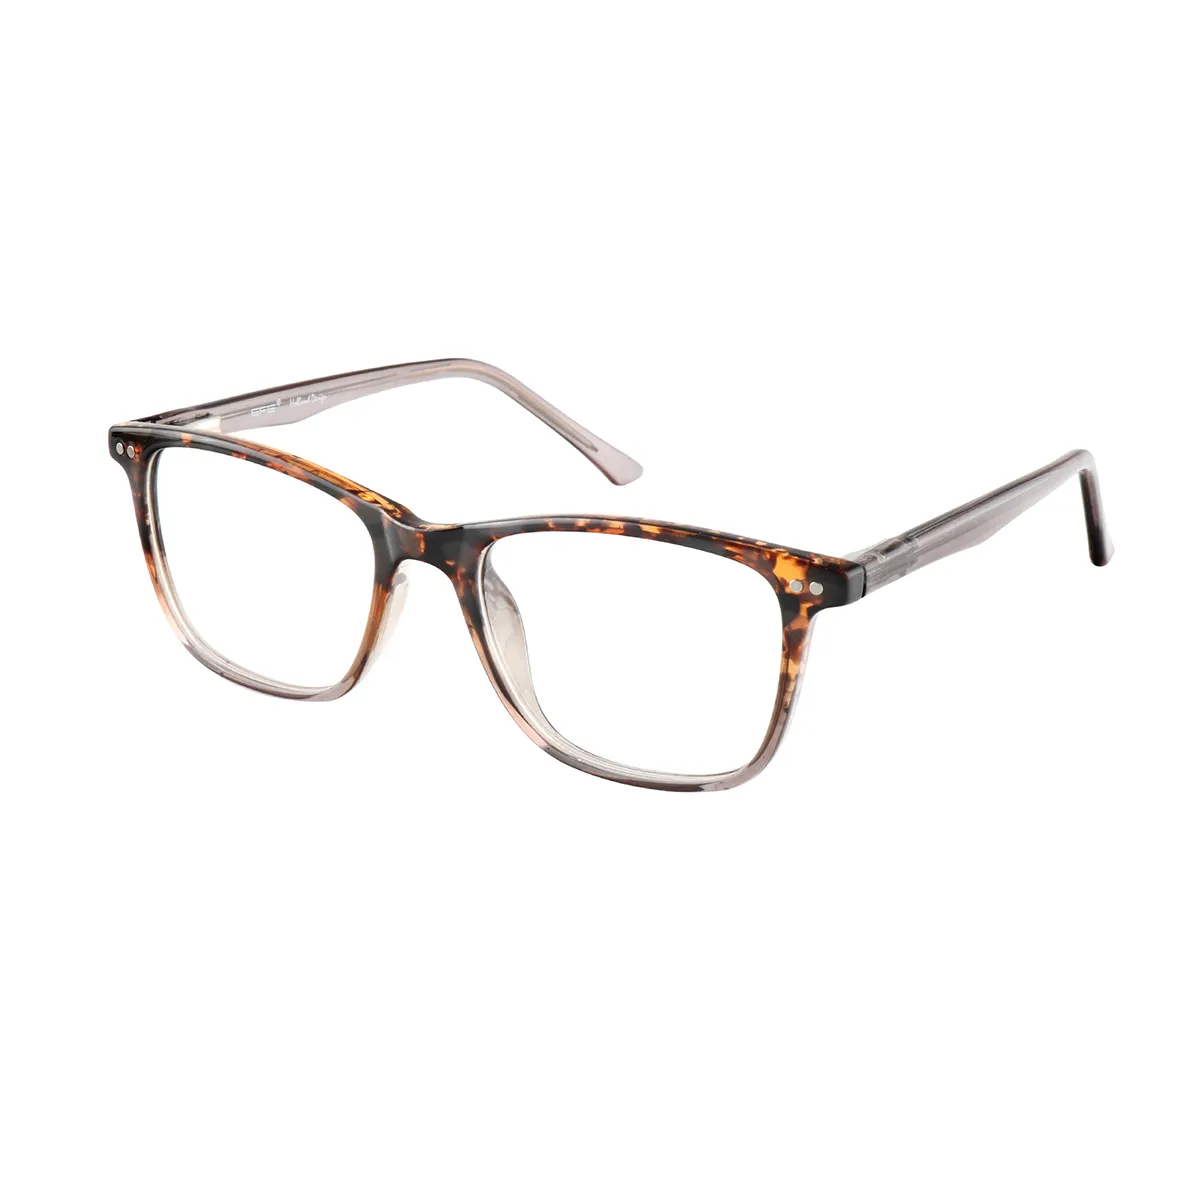 Gibbons - Square Tortoiseshell-Translucent Glasses for Men & Women - EFE